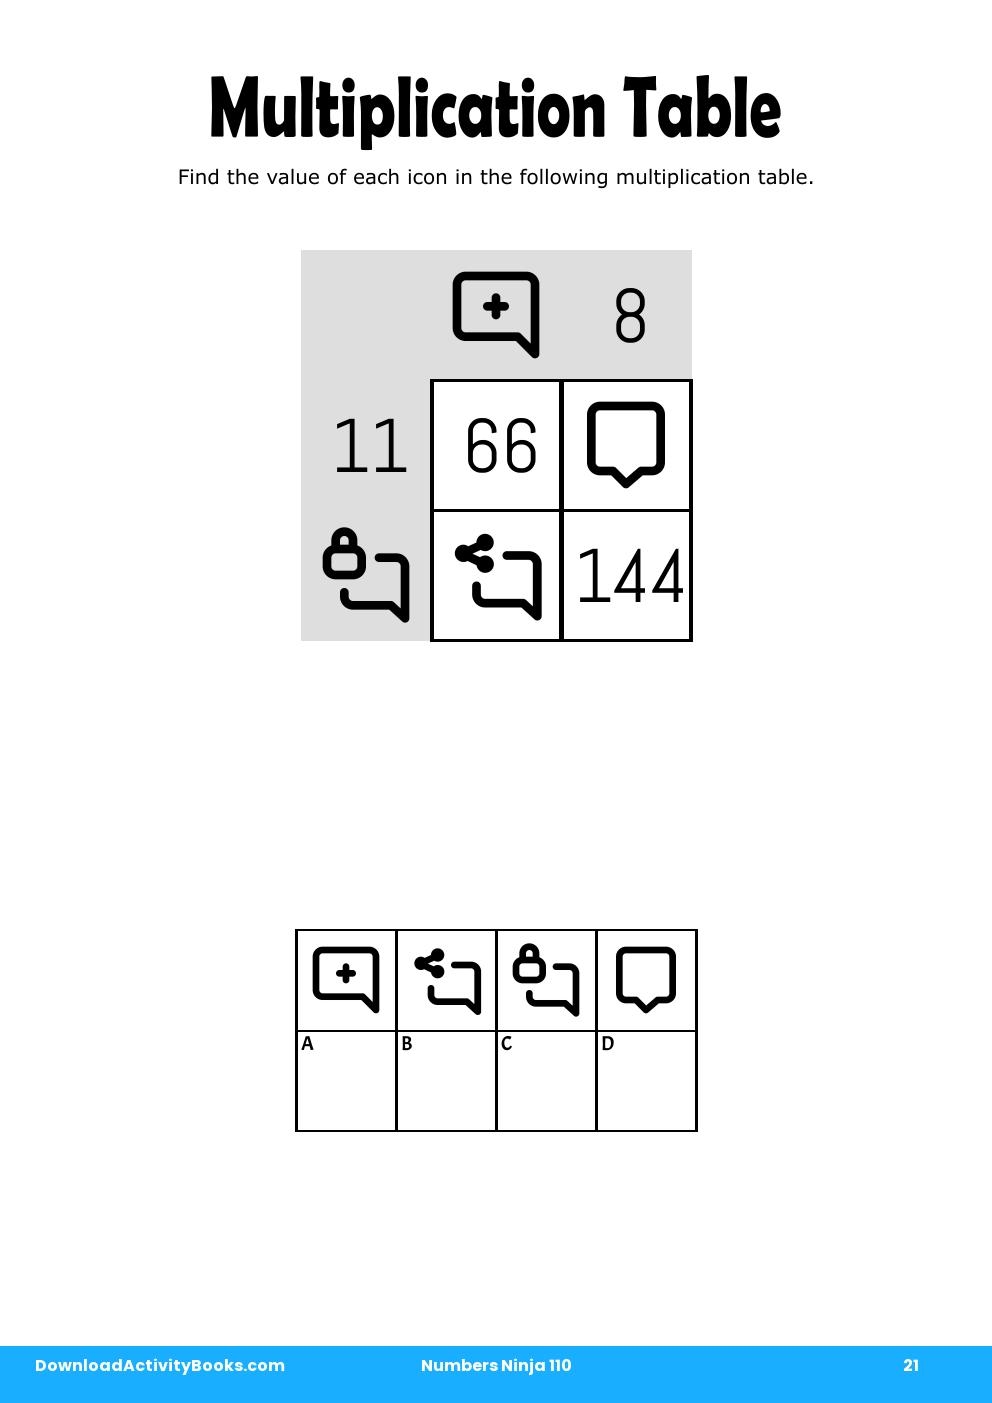 Multiplication Table in Numbers Ninja 110